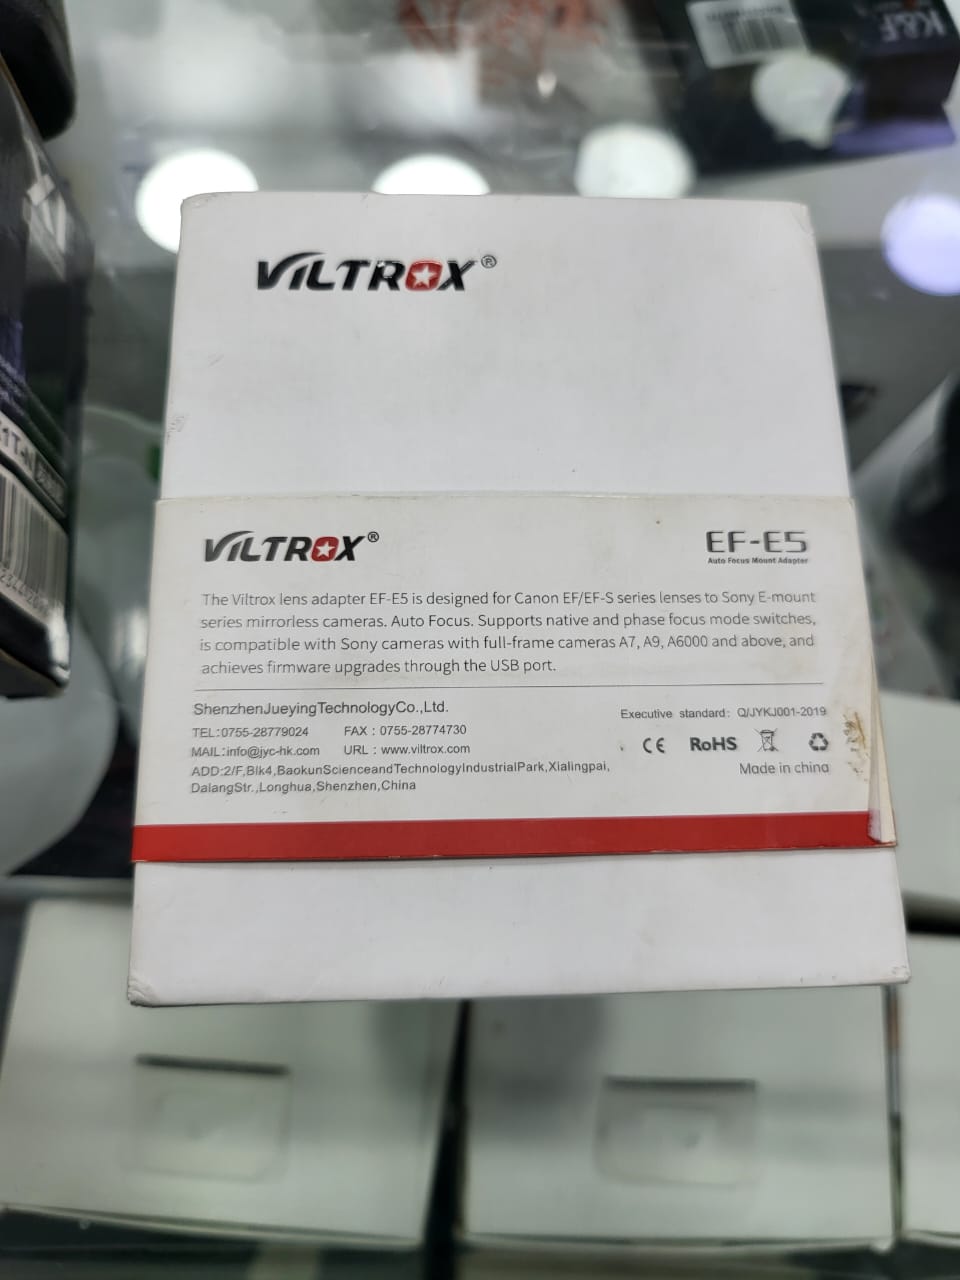 Open Box Viltrox Brand Auto Focus EF-EVILTROX Brand Auto Focus EF-E5 Mount Adapter